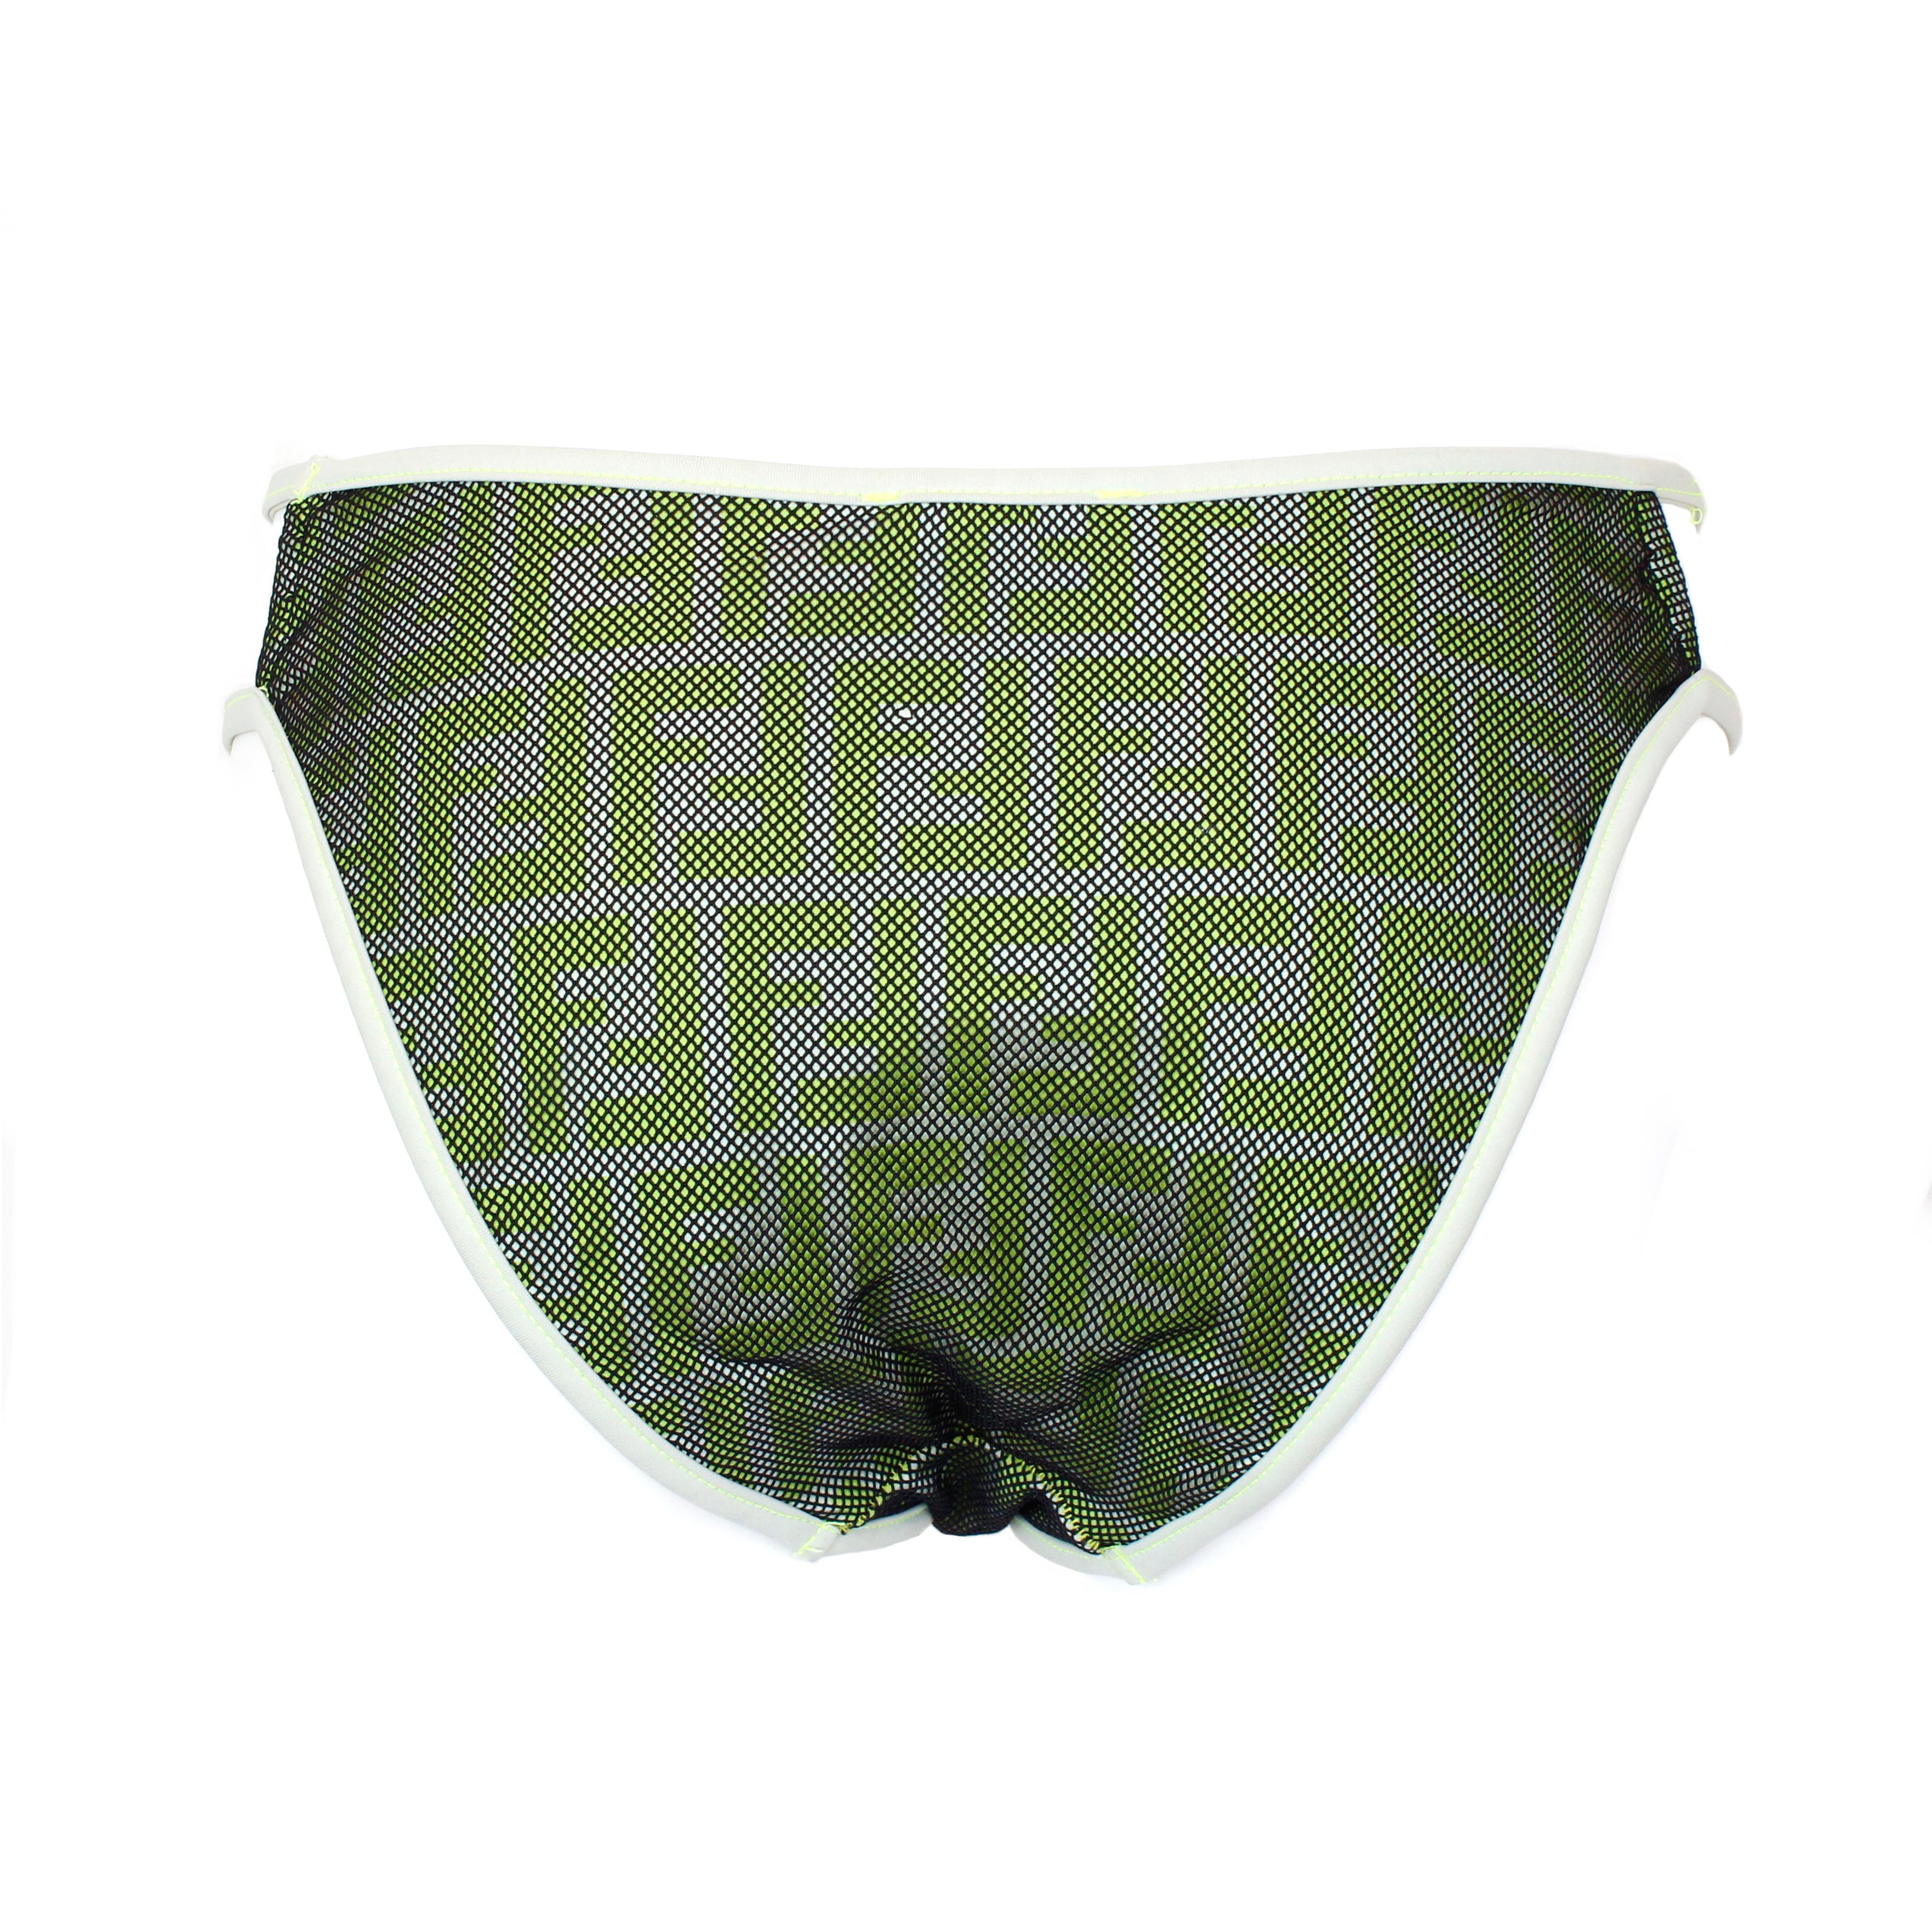 Einteiliges Bikini-Unterteil von Fendi, grüner Zucca-Druck, mit schwarzem Netz. Größe 44 IT.
